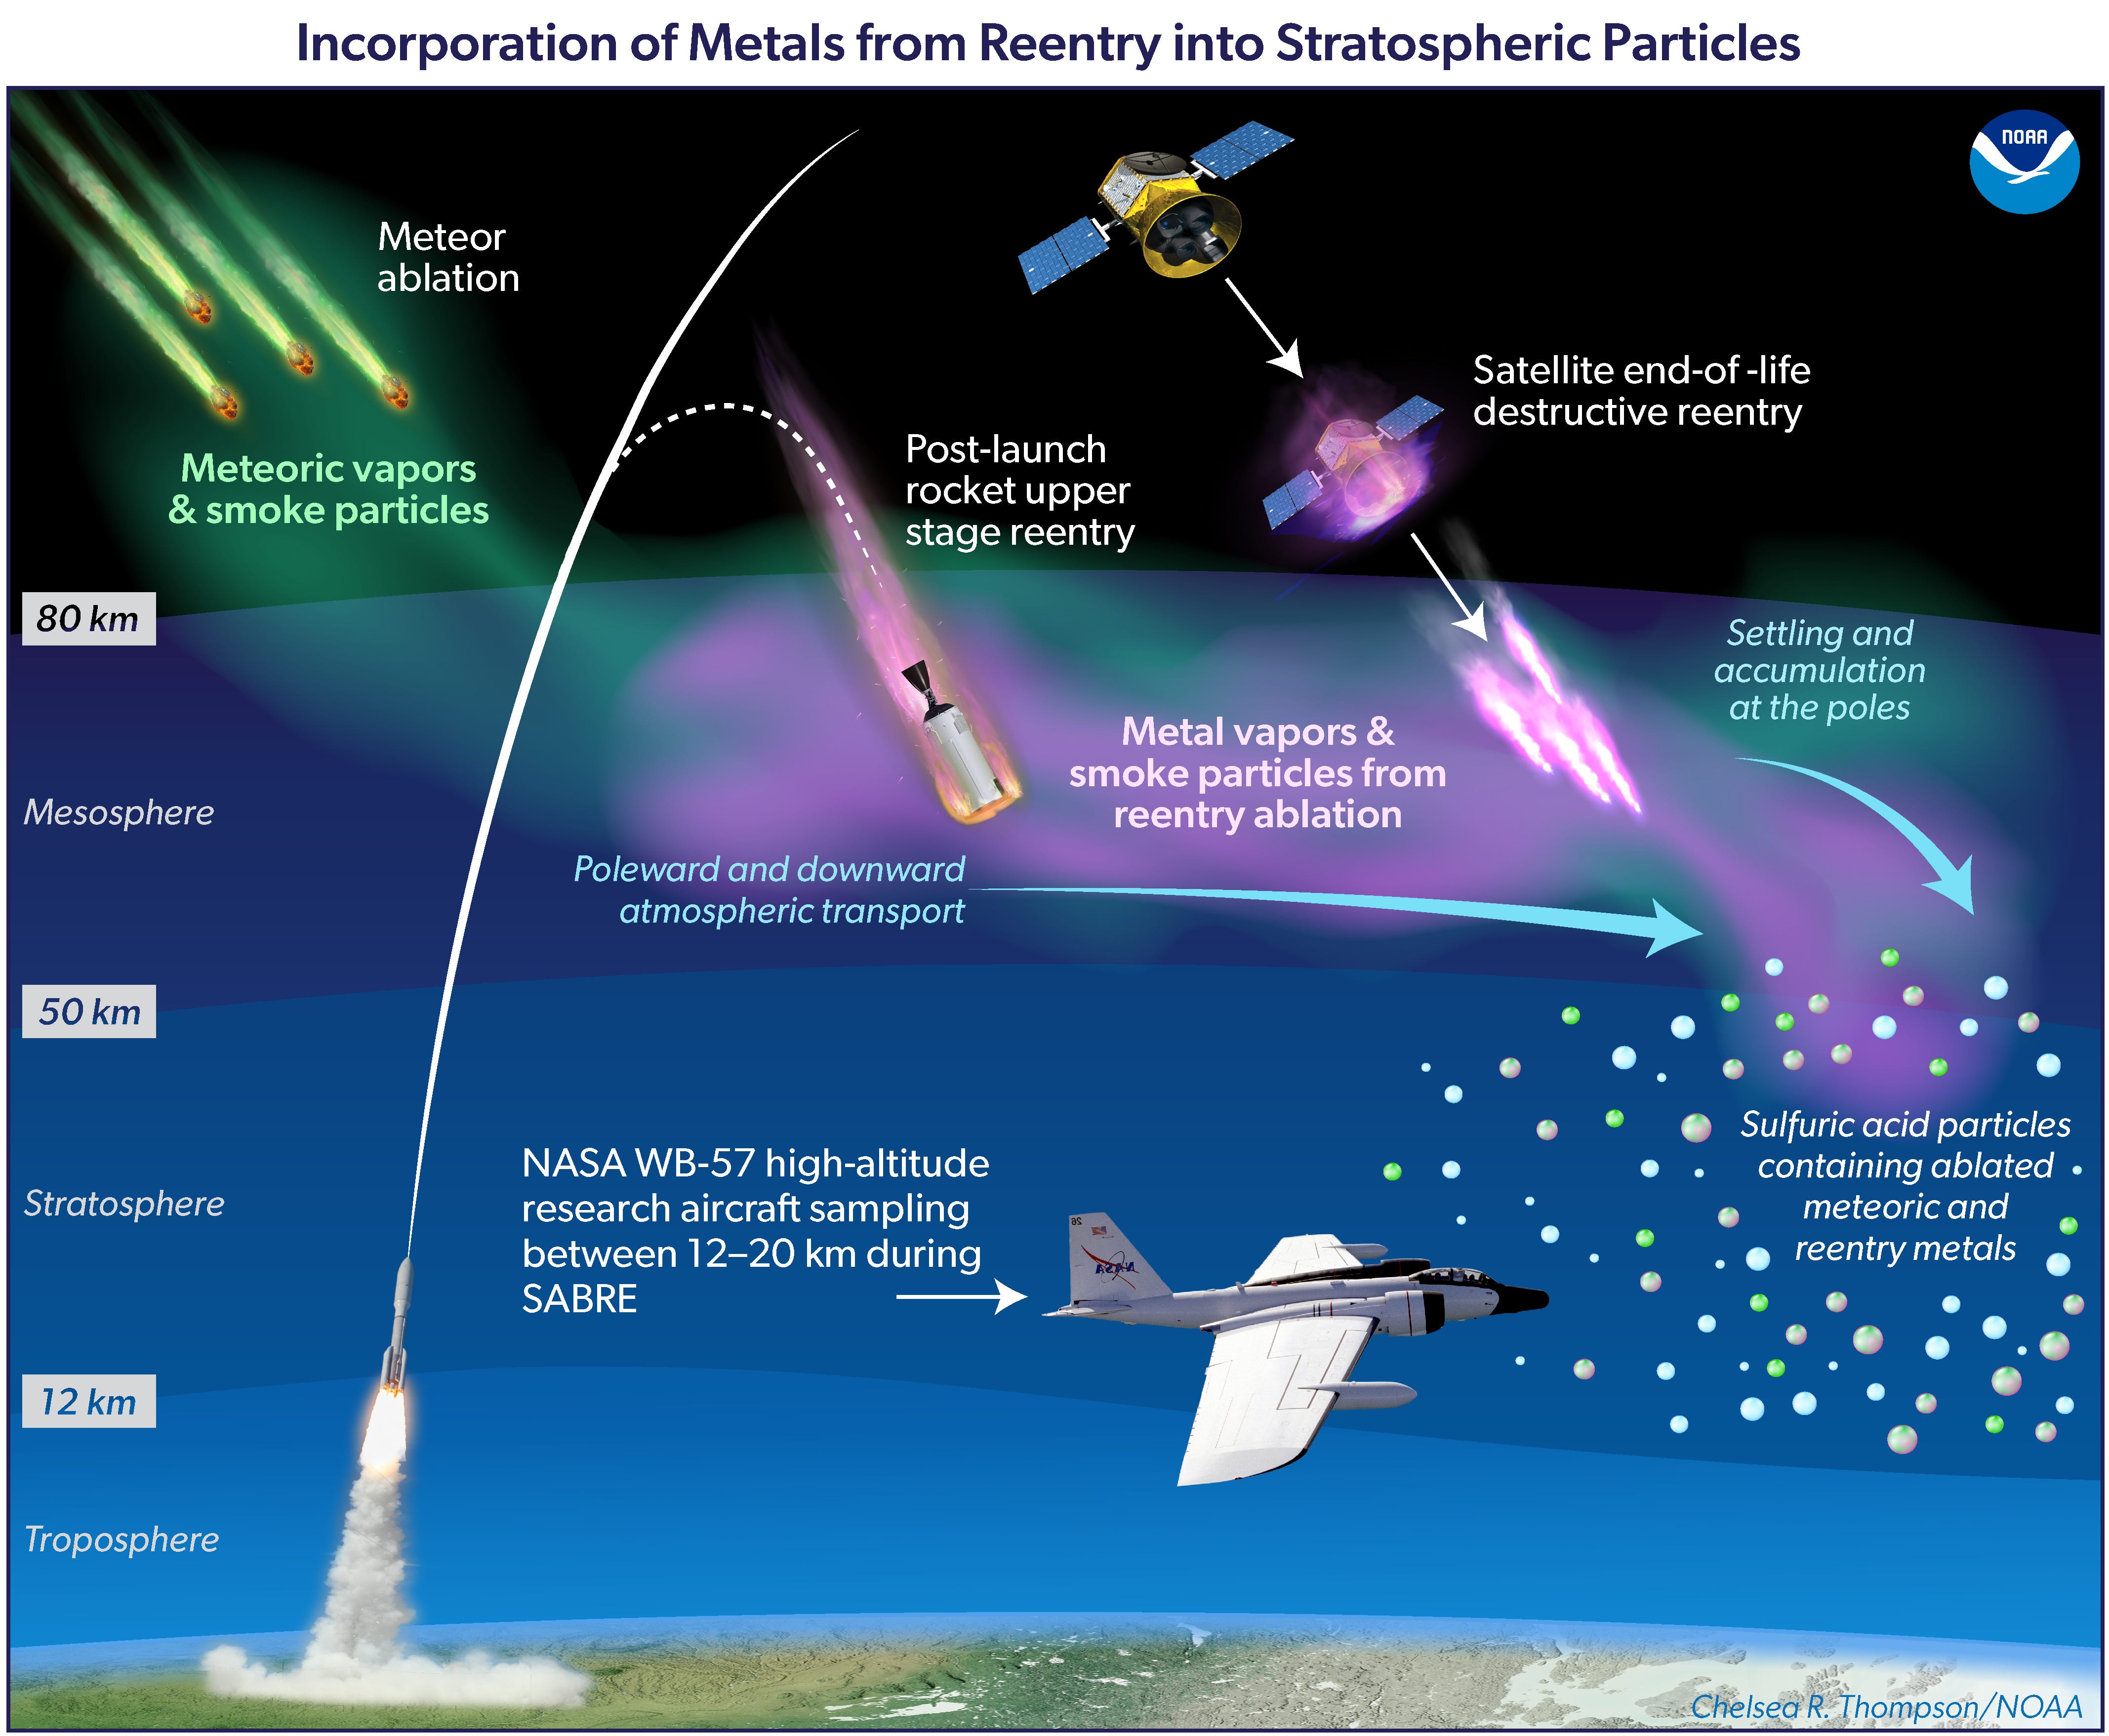 Eine Grafik zeigt, wie Meteore und der Wiedereintritt von Raumfahrzeugen Metallpartikel in der Stratosphäre entzünden könnten.